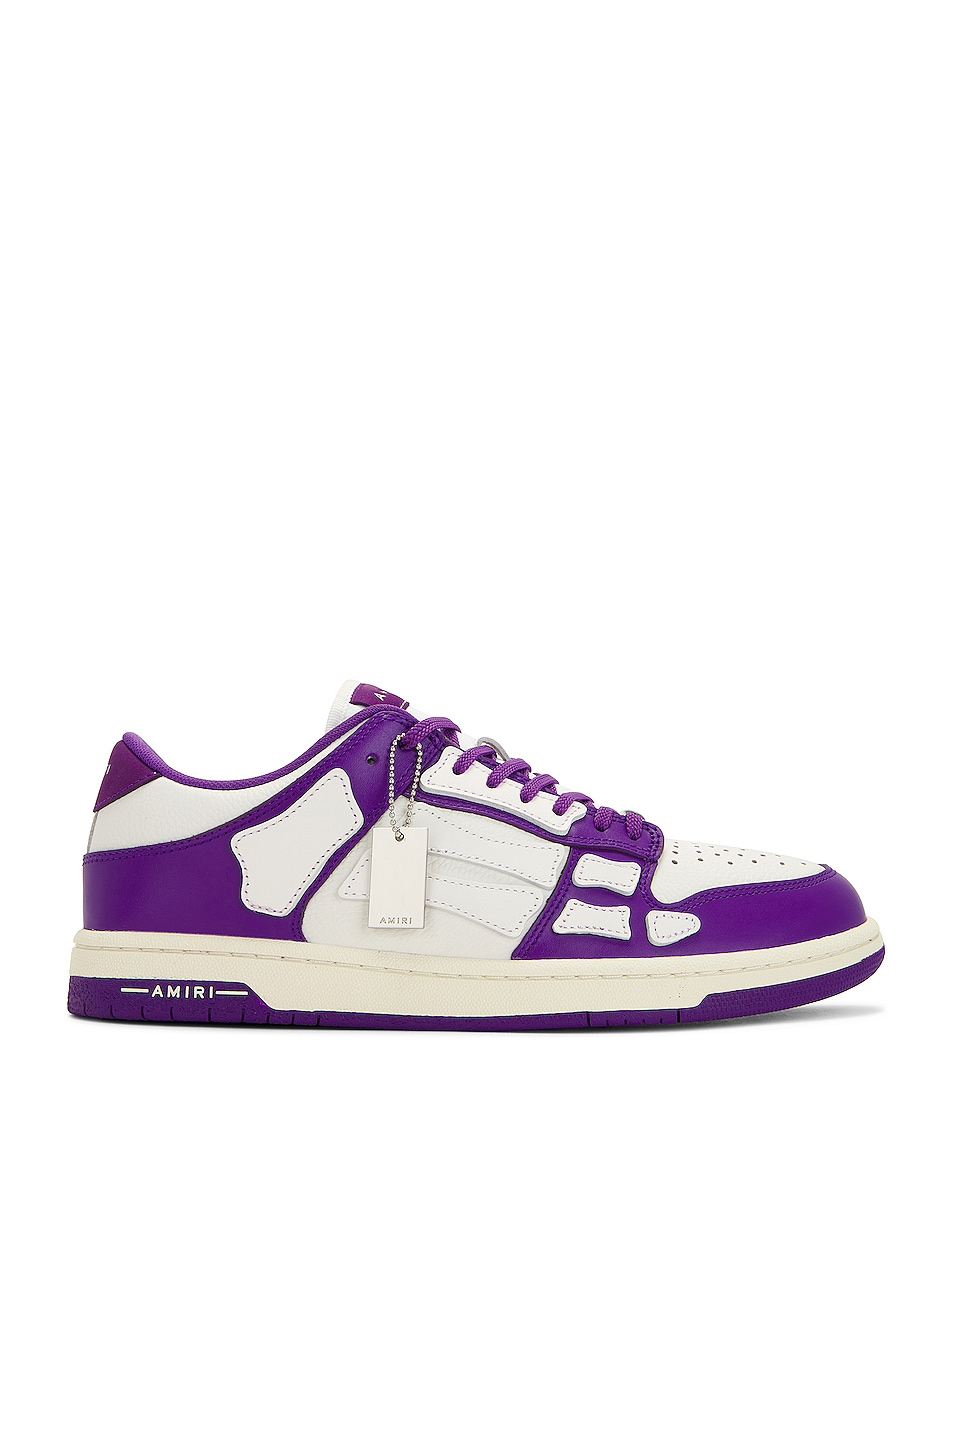 Amiri Skel Top Low Sneaker in Purple | FWRD